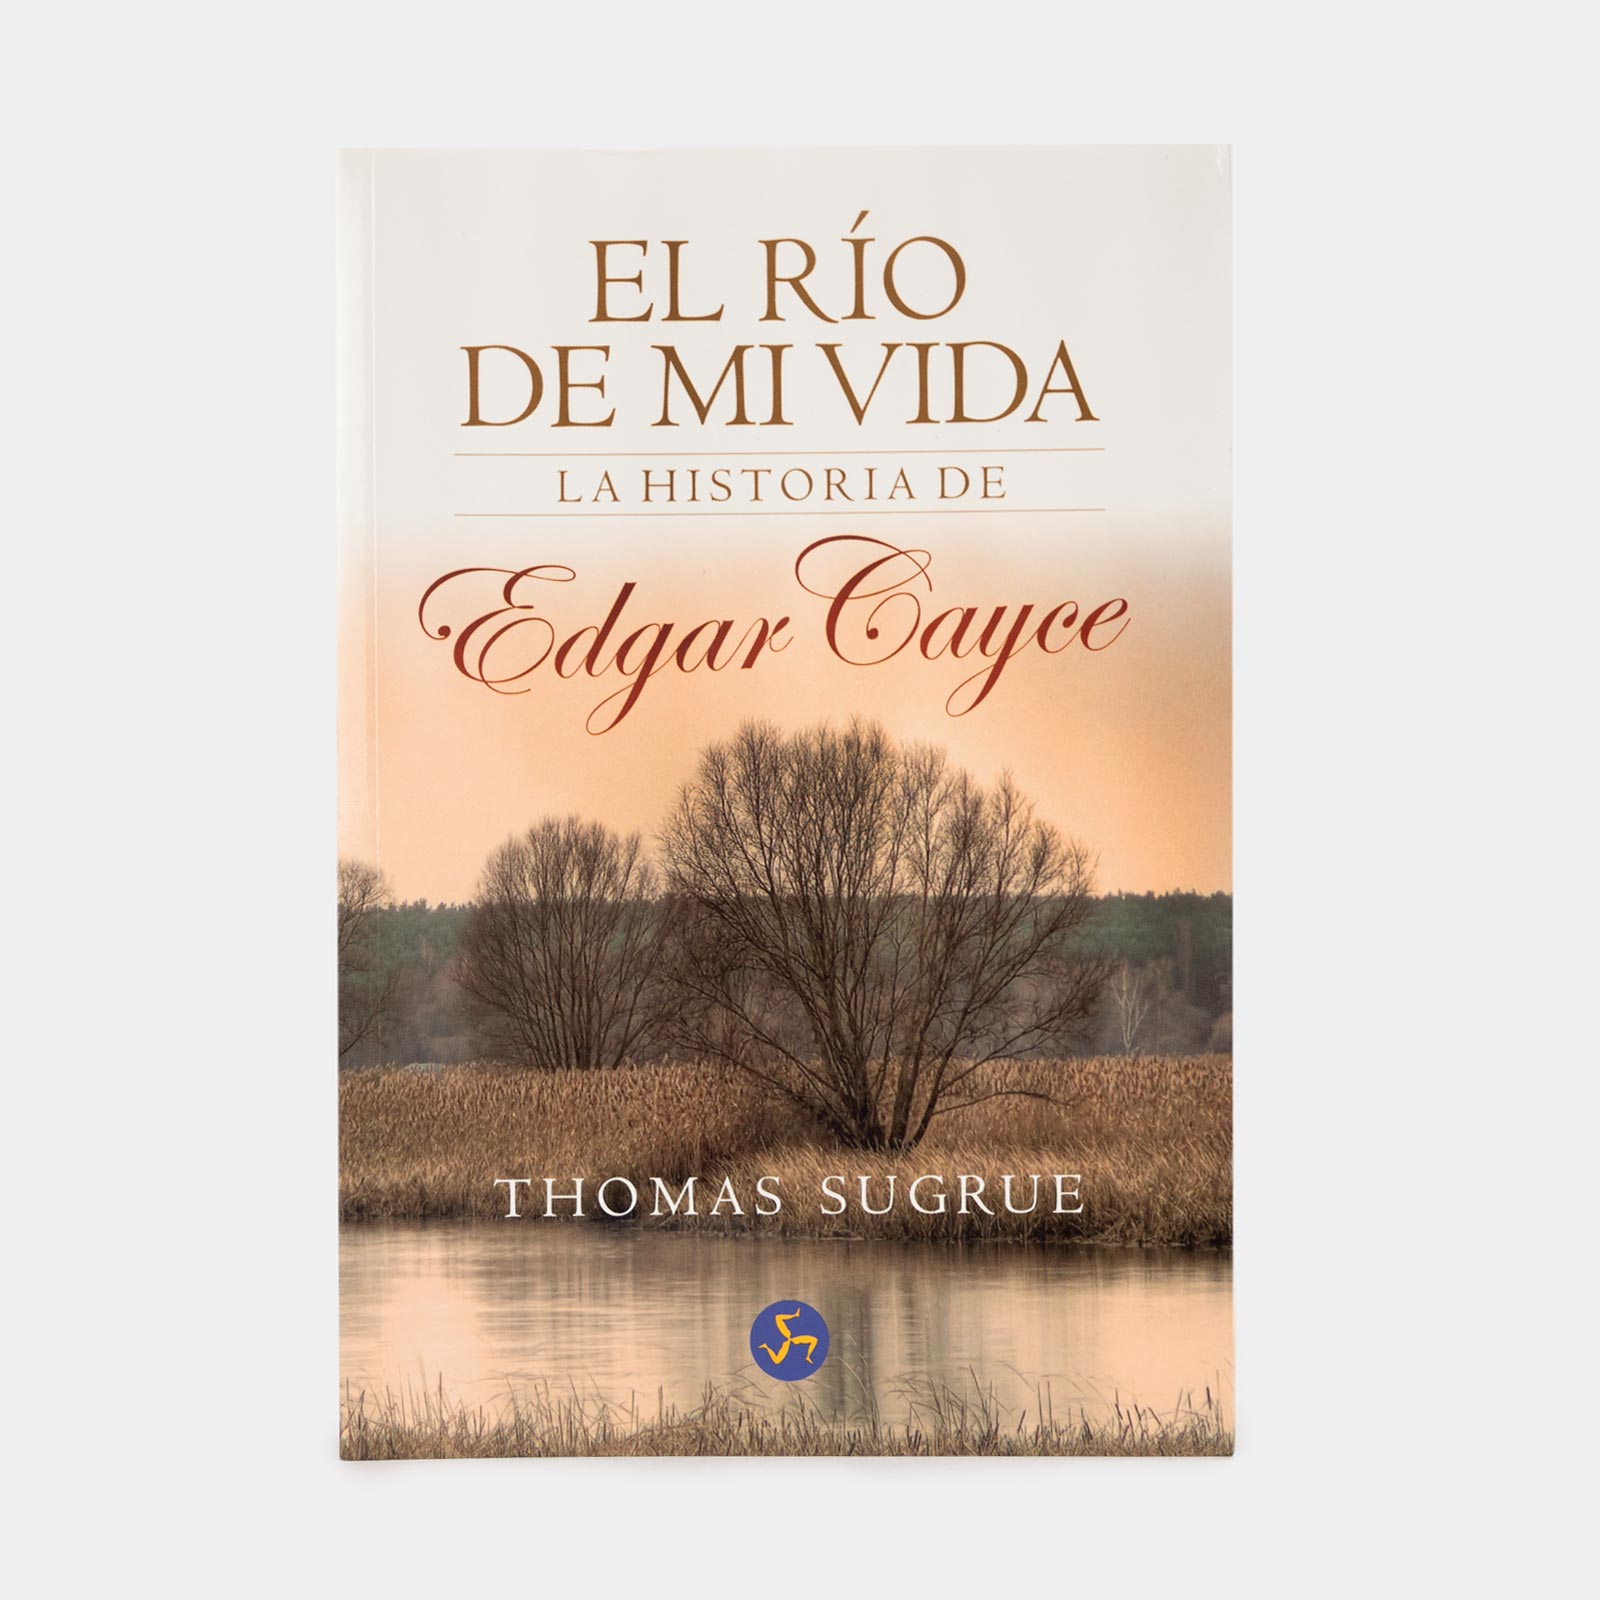  El río de mi vida: La historia de Edgar Cayce: 9788495973184:  Sugrue, Thomas, Equipo editorial de Neo Person Ediciones: Books